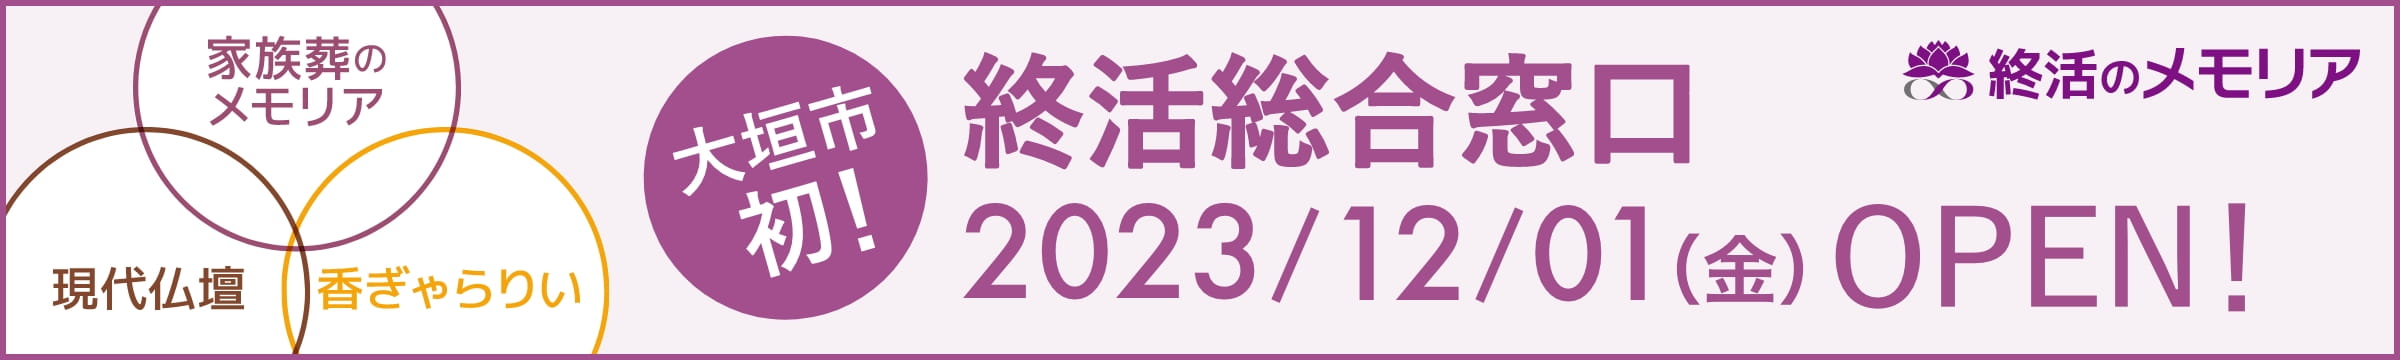 大垣市初！終活相談窓口 2023/12/01(金) OPEN!